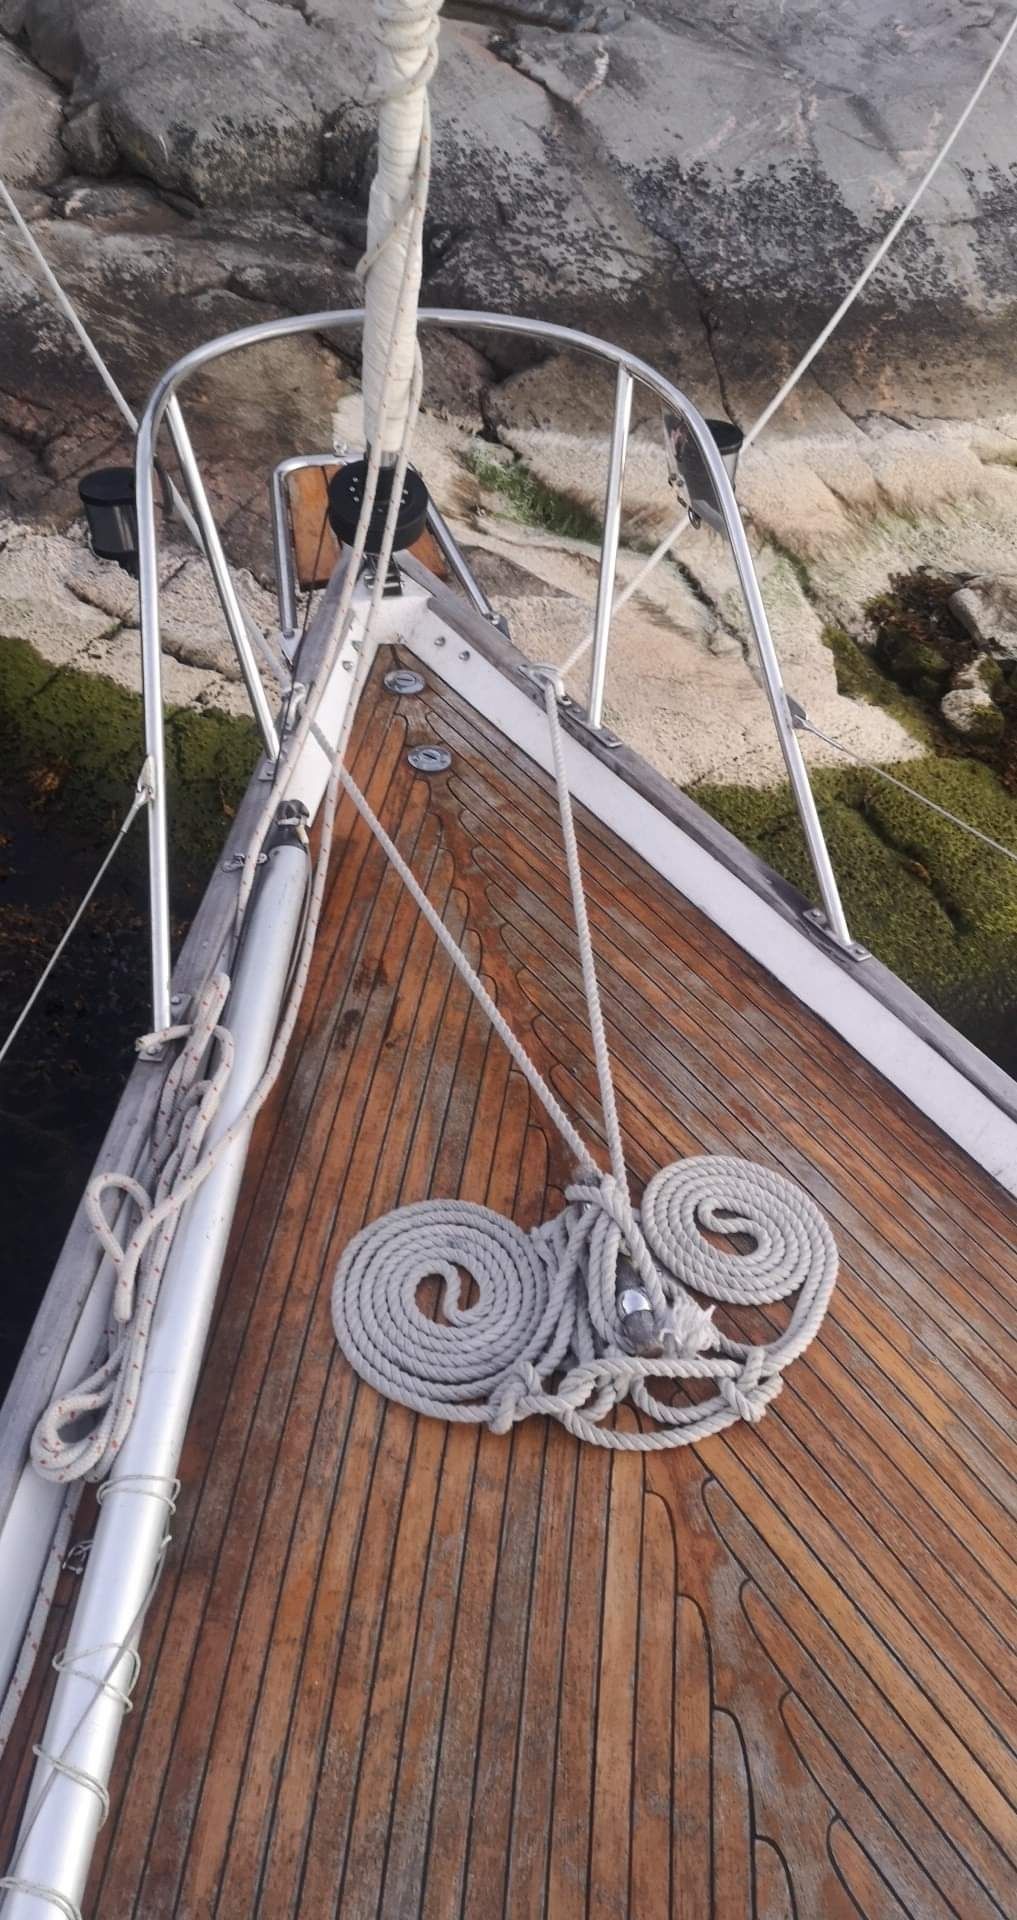 Jacht morski Shipman 28 + miejsce w klubie zeglarskim w Szwecji